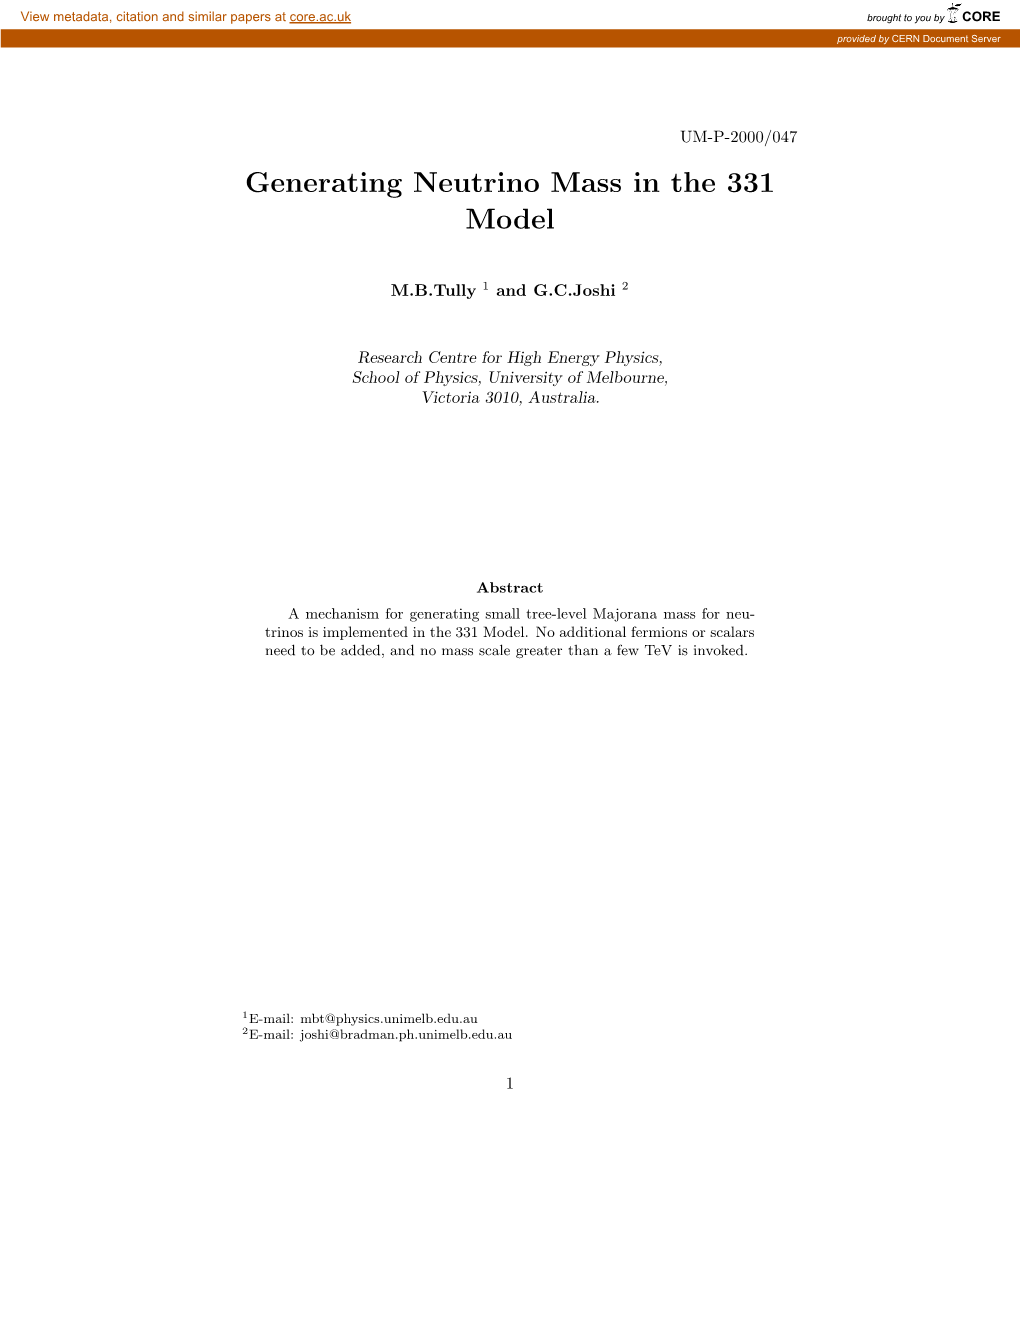 Generating Neutrino Mass in the 331 Model